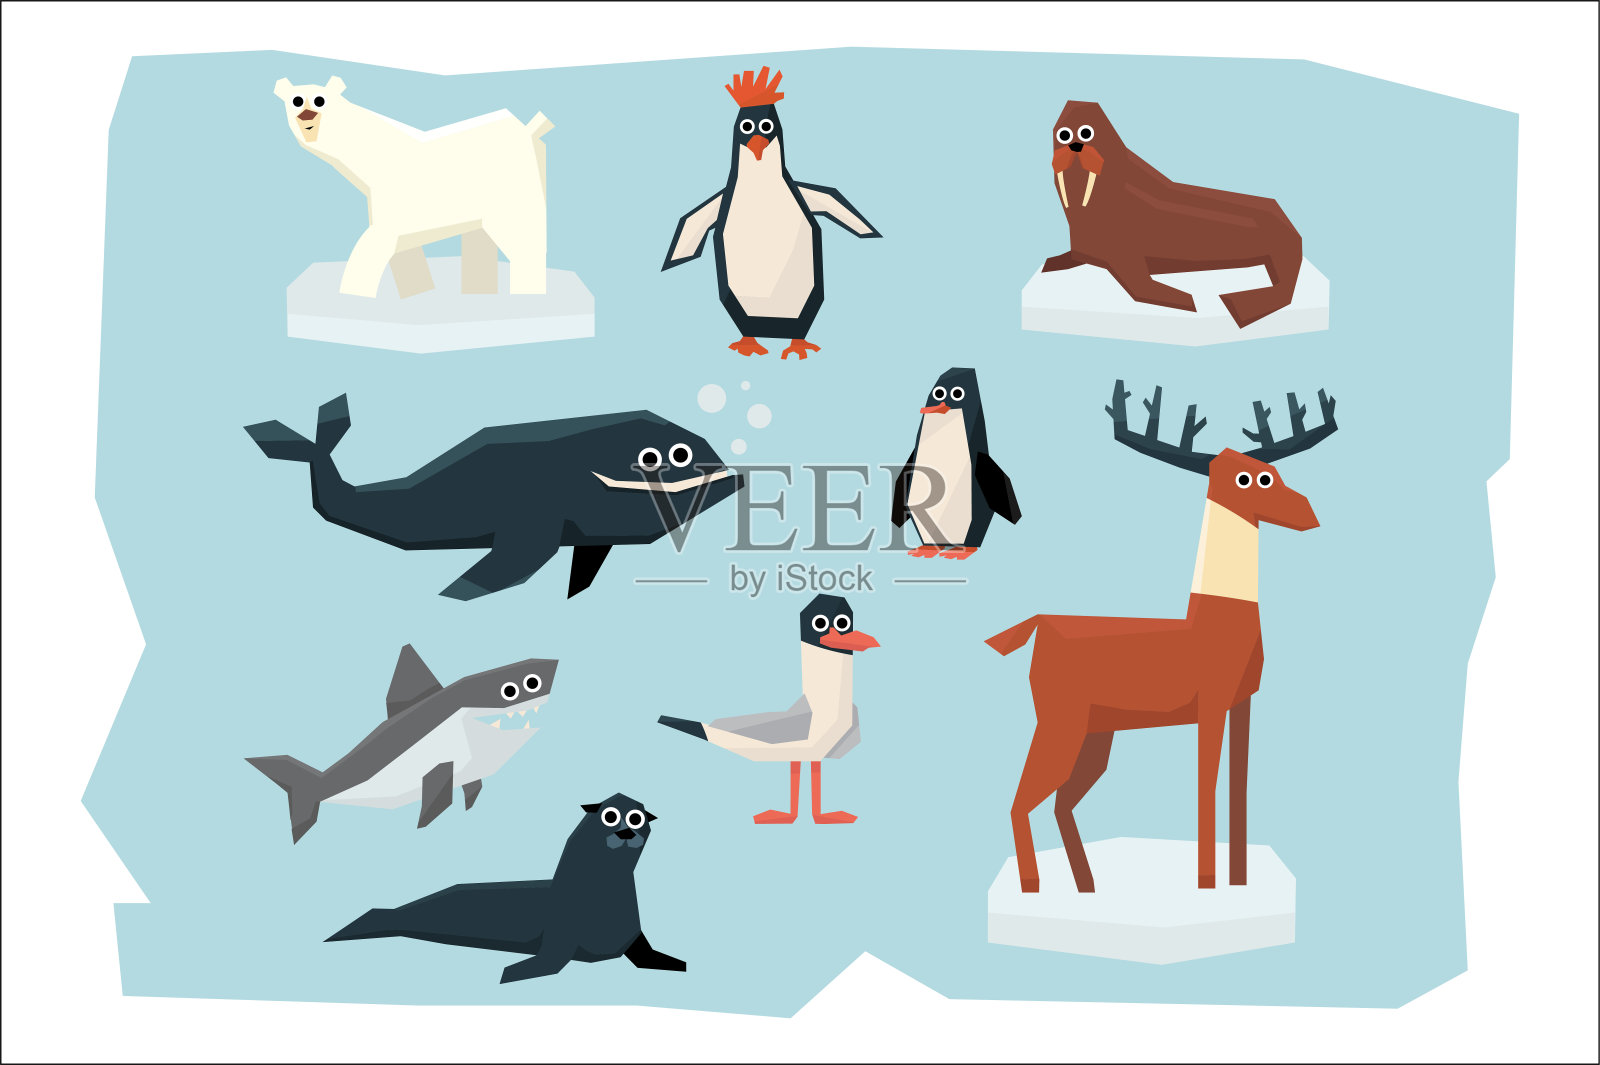 不同的北极和南极动物的卡通集合。北极熊、企鹅、信天翁、驯鹿、海豹、海象、鲨鱼和鲸鱼。彩色平面矢量设计插画图片素材